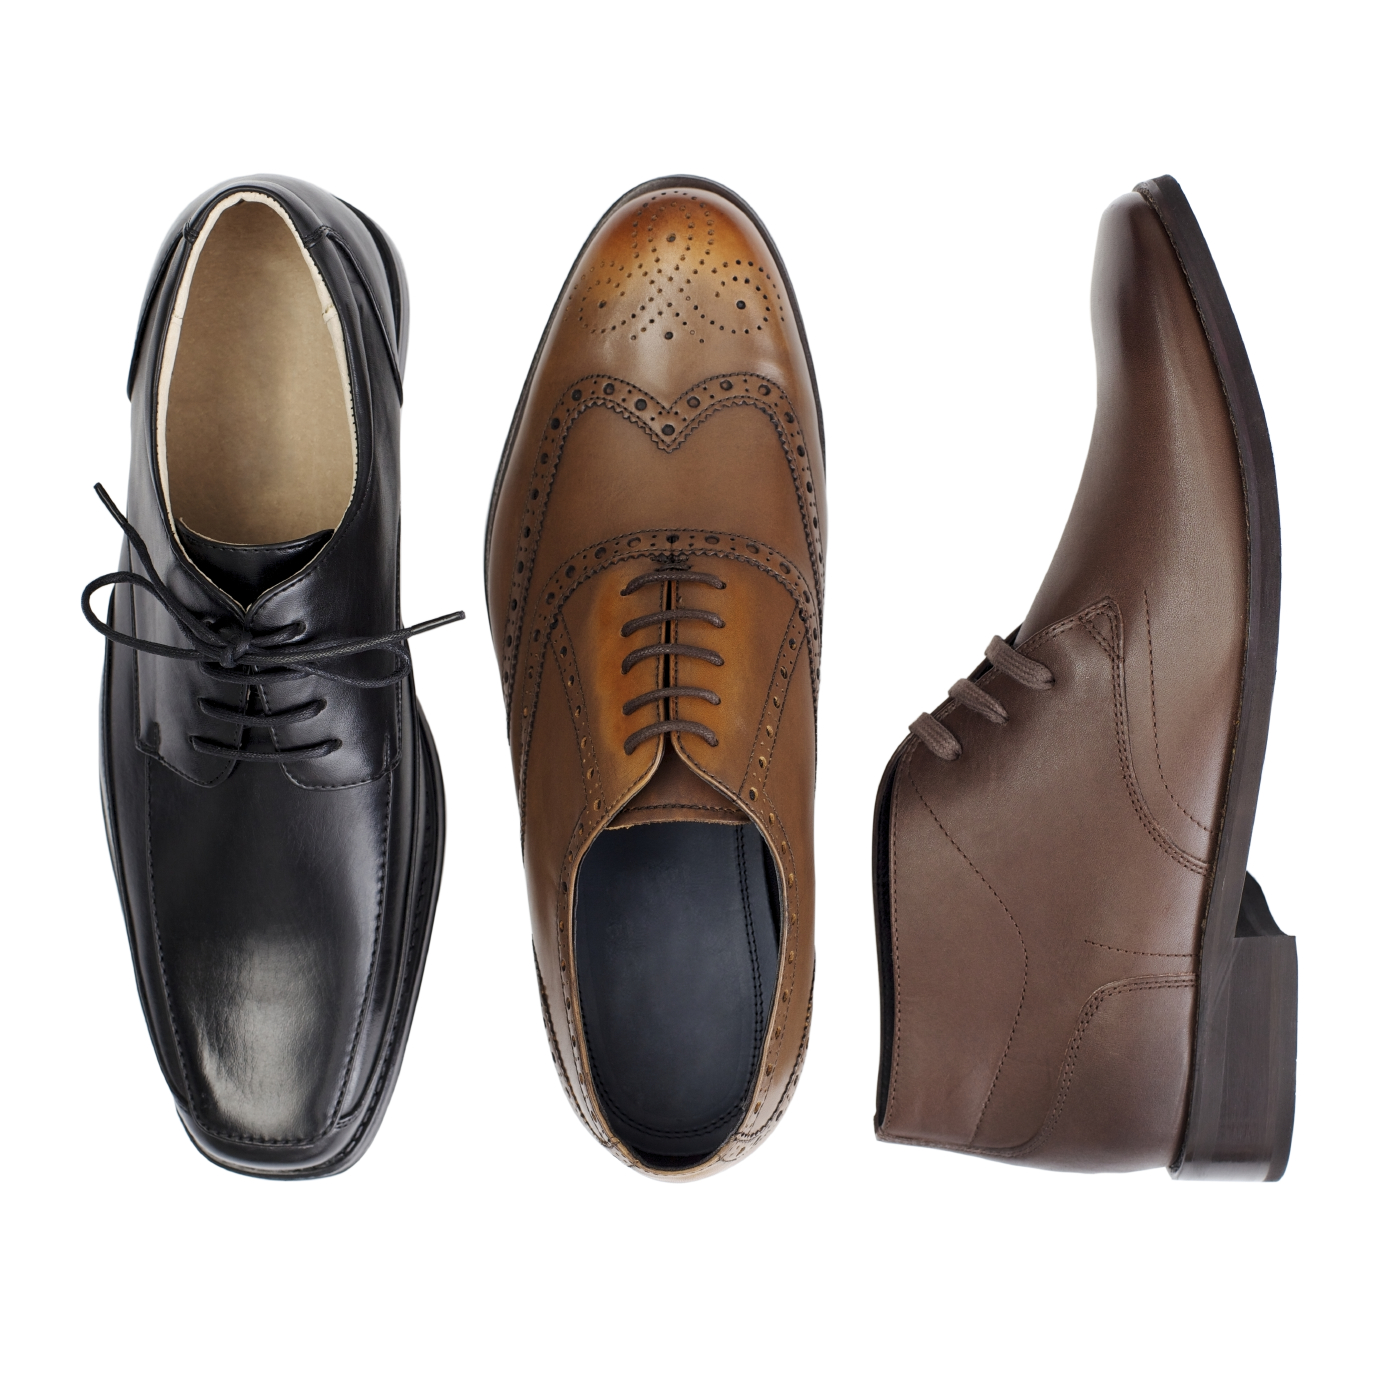 Comfortable Mens Shoes: The Best Men’s Dress Shoe Brands